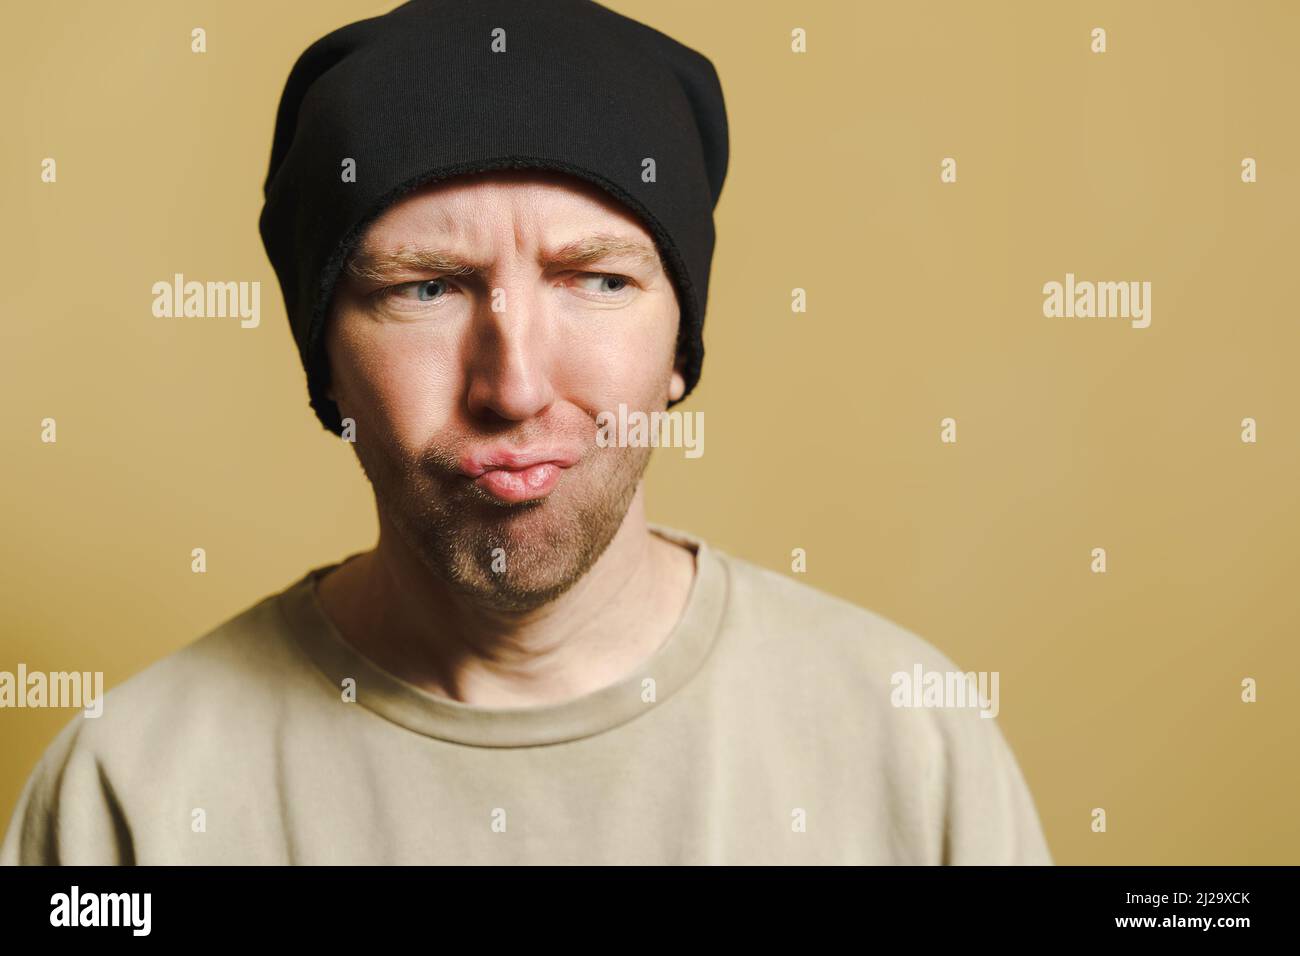 L'homme dans le chapeau noir regarde avec mépris. Portrait d'un jeune homme faisant des visages. Banque D'Images